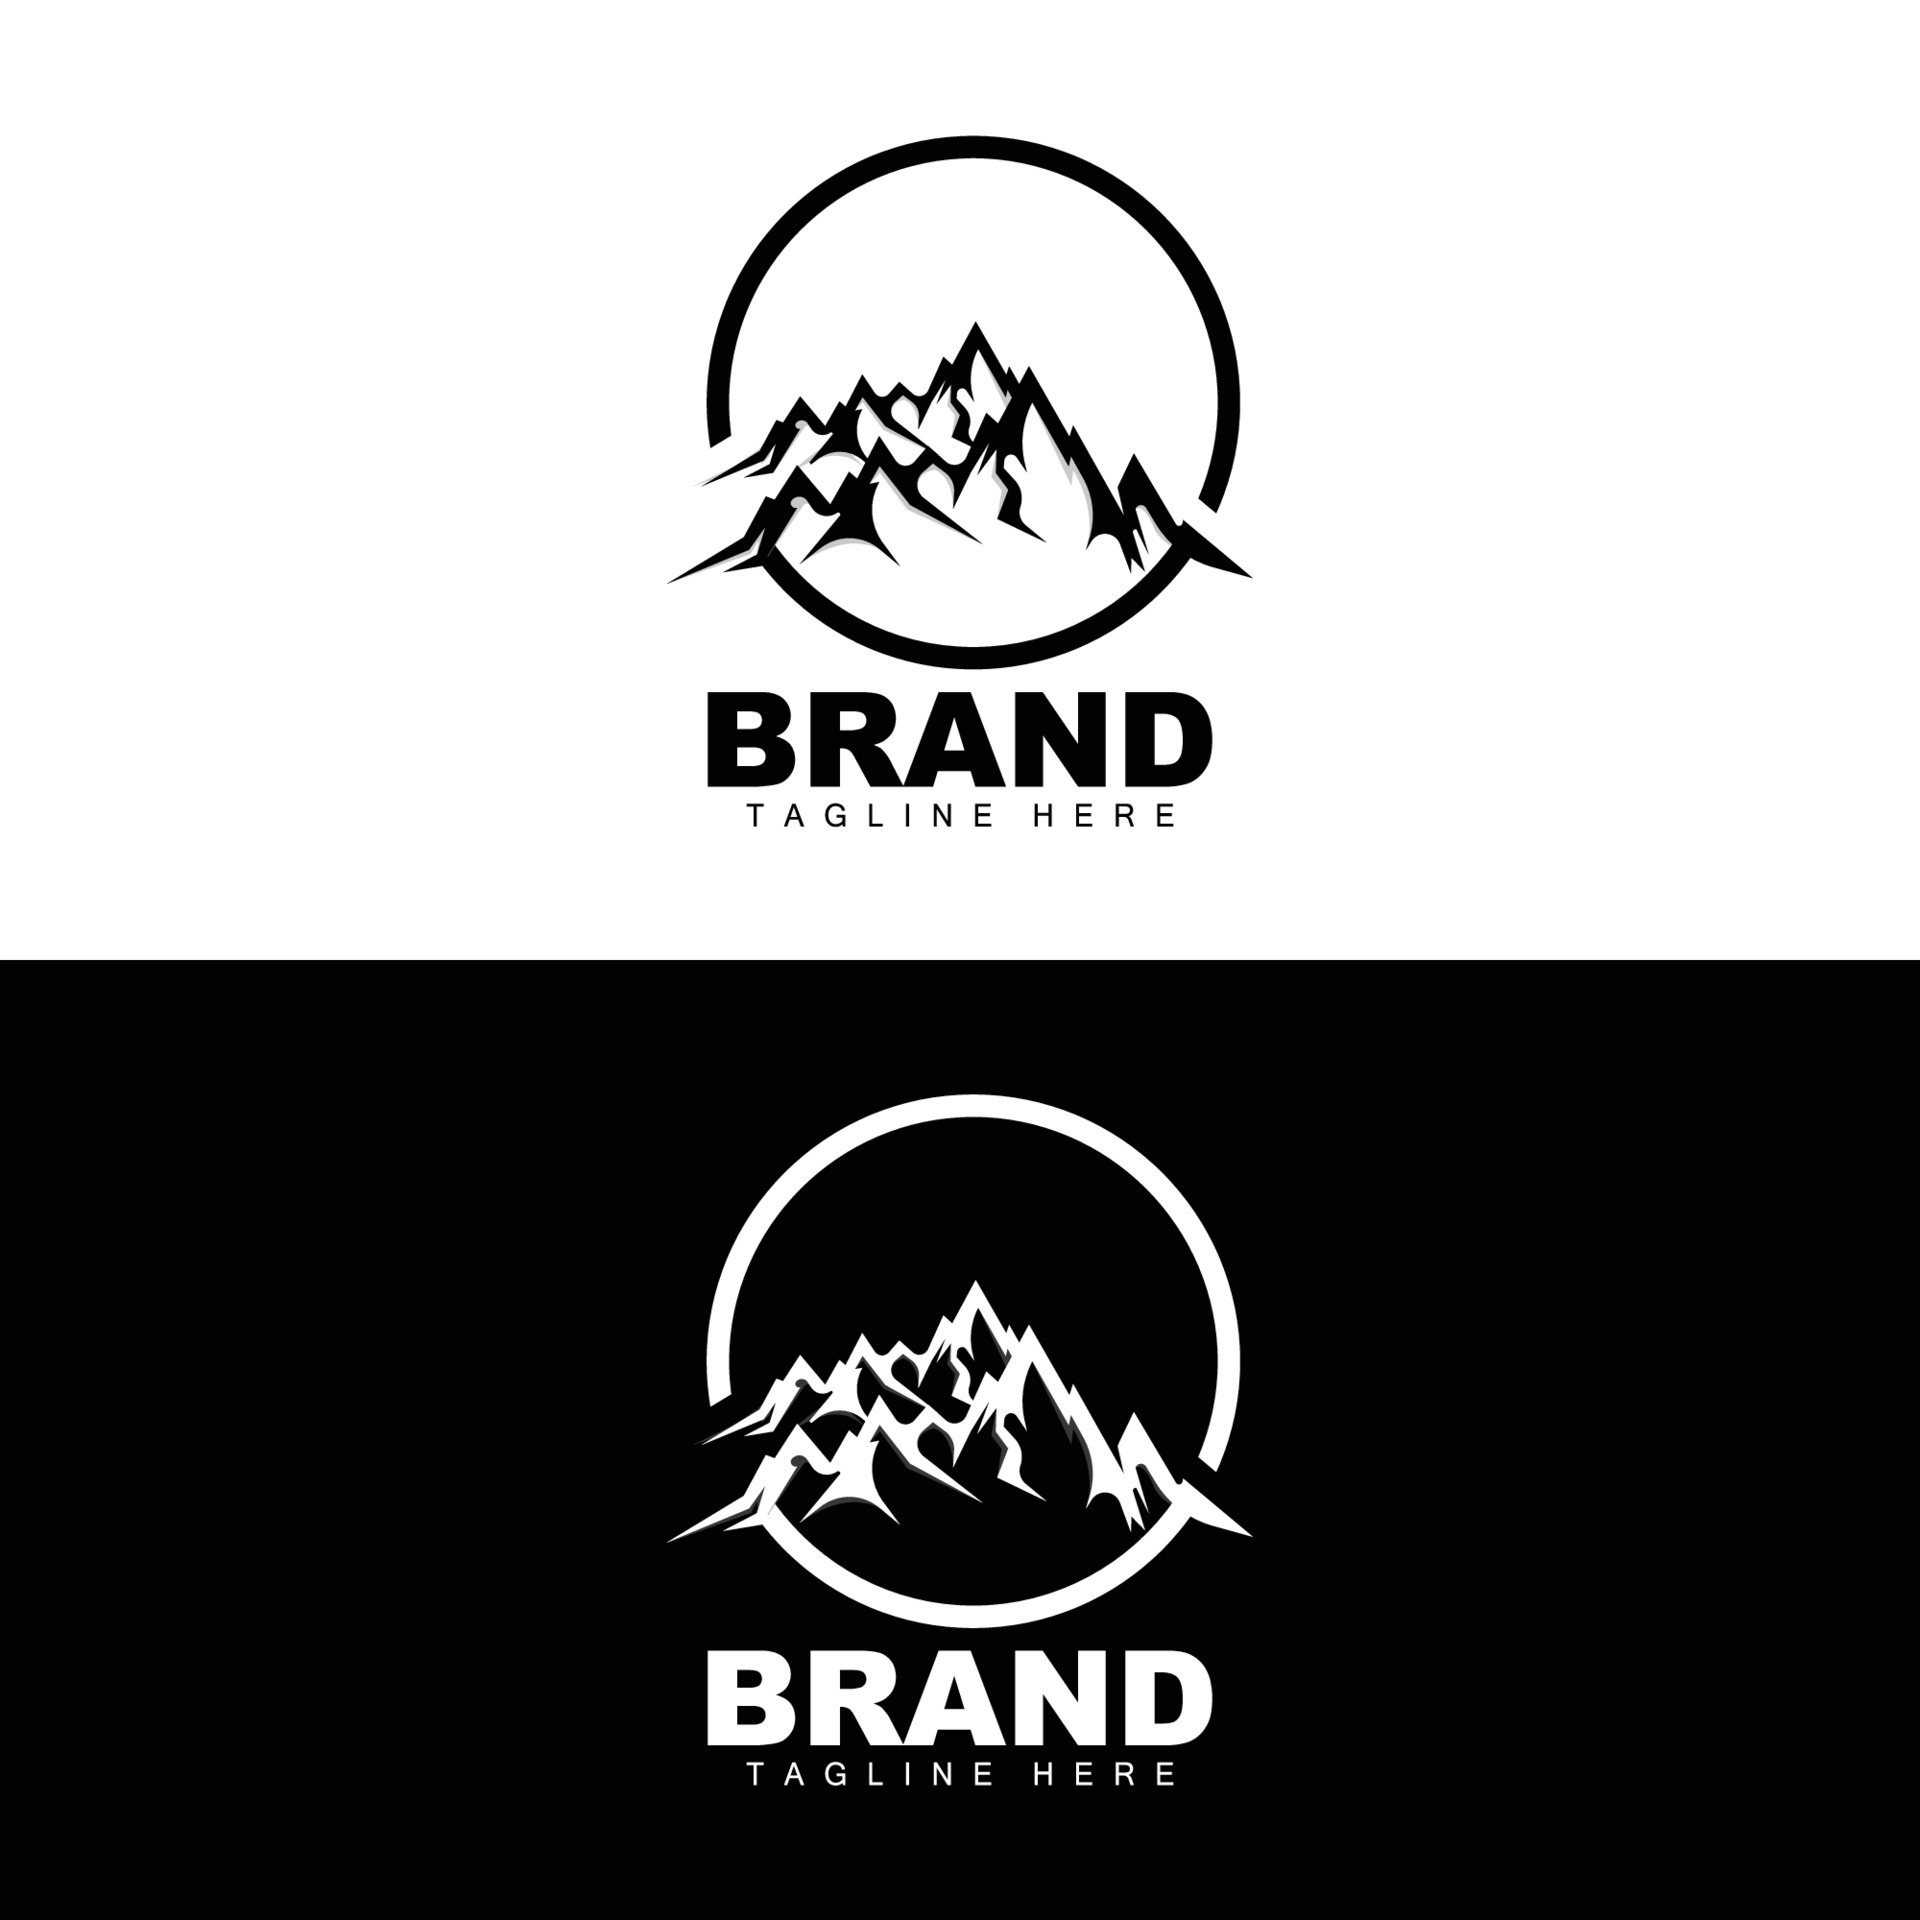 Mountain Logo, Vector Mountain Climbing, Adventure, Design For Climbing ...